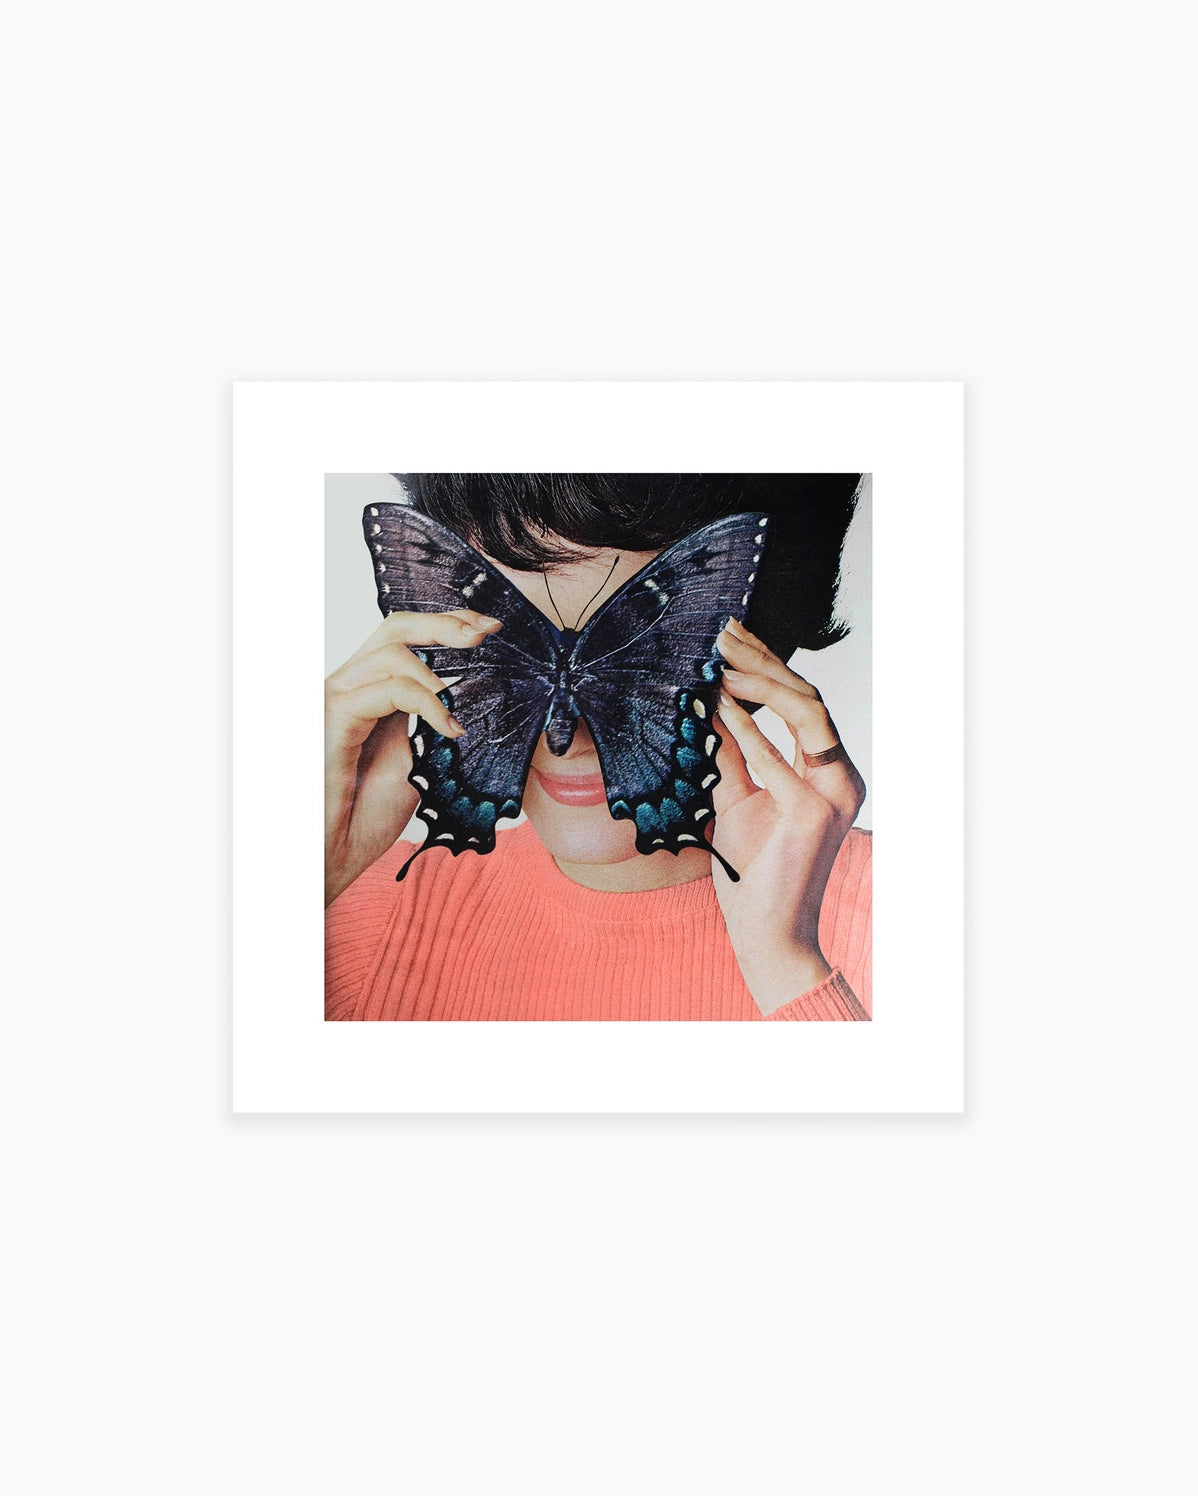 Morpho Butterfly, Open Edition Print by Julia Walck